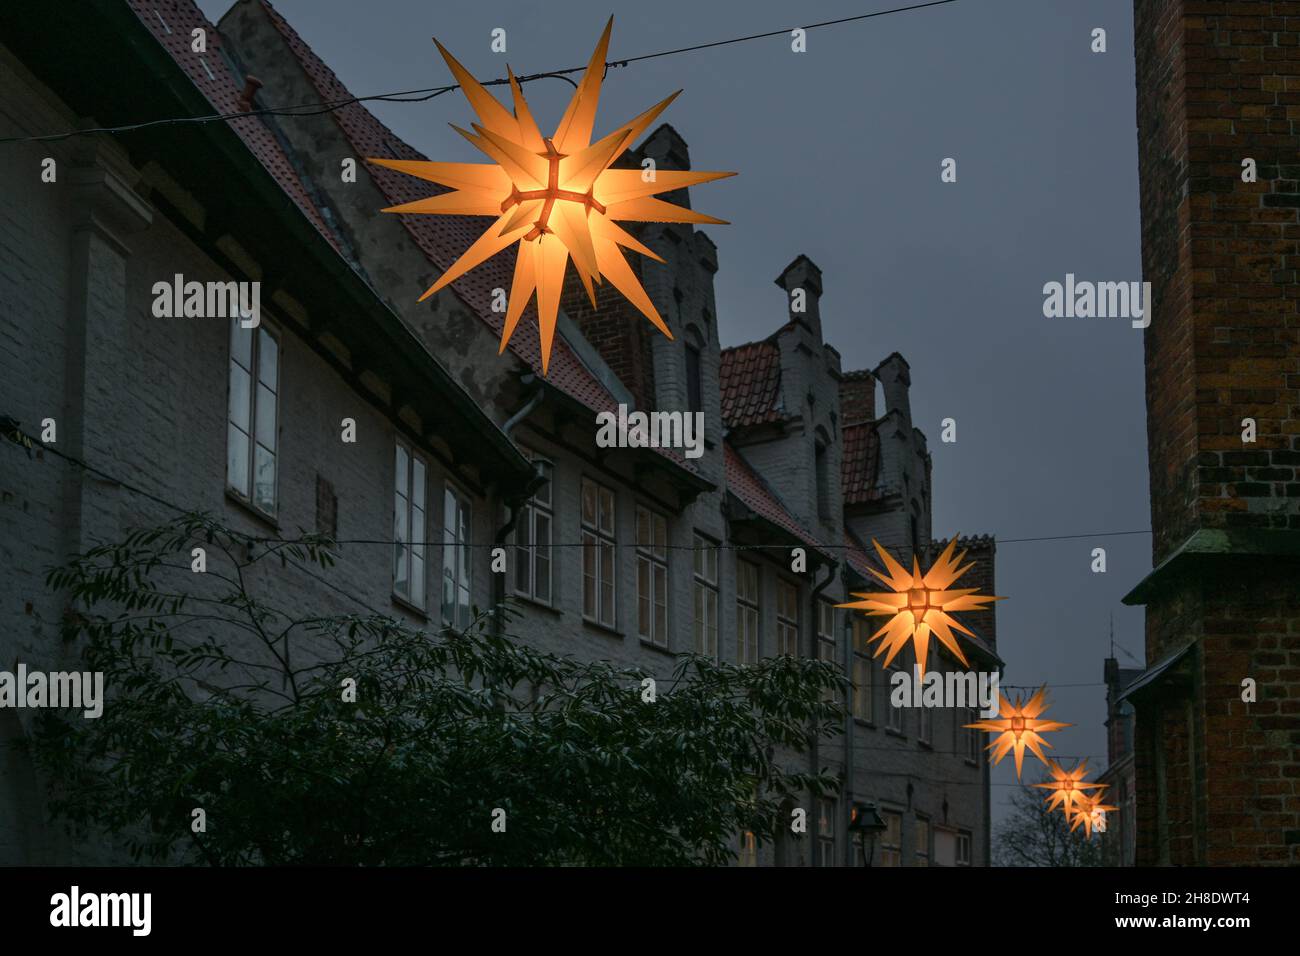 Fila di stelle moravi scintillanti tra le case storiche nella città vecchia di Lubeck in Germania per l'avvento e il Natale di notte, spazio copia, selezionato foc Foto Stock